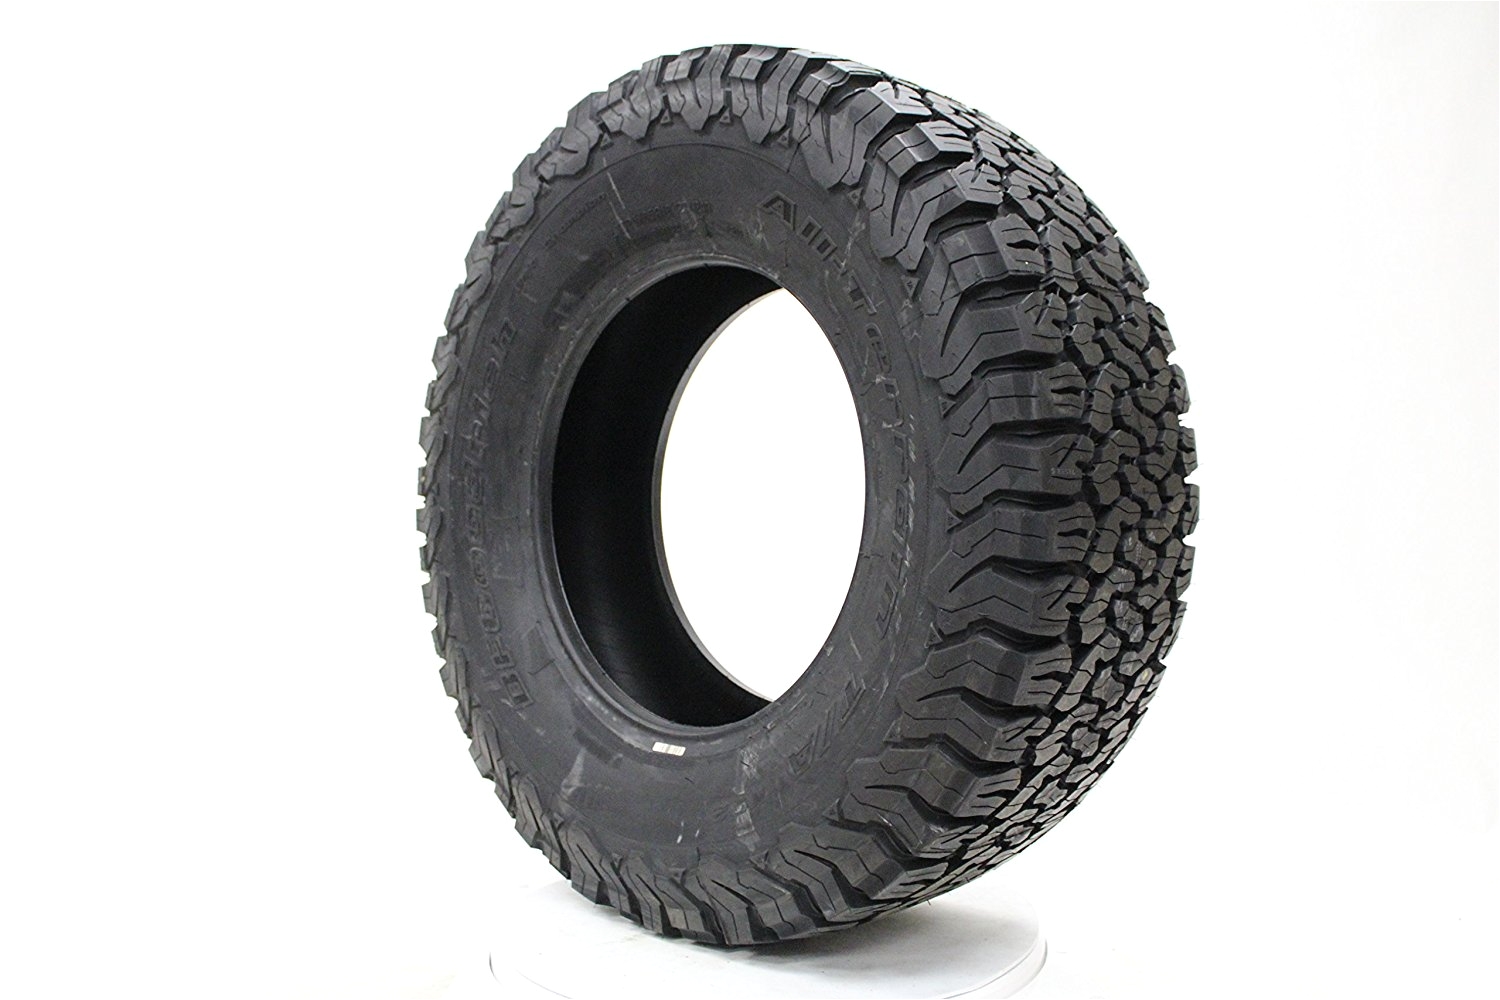 amazon com bfgoodrich all terrain t a ko2 radial tire 285 65r18 125r bfgoodrich tires automotive